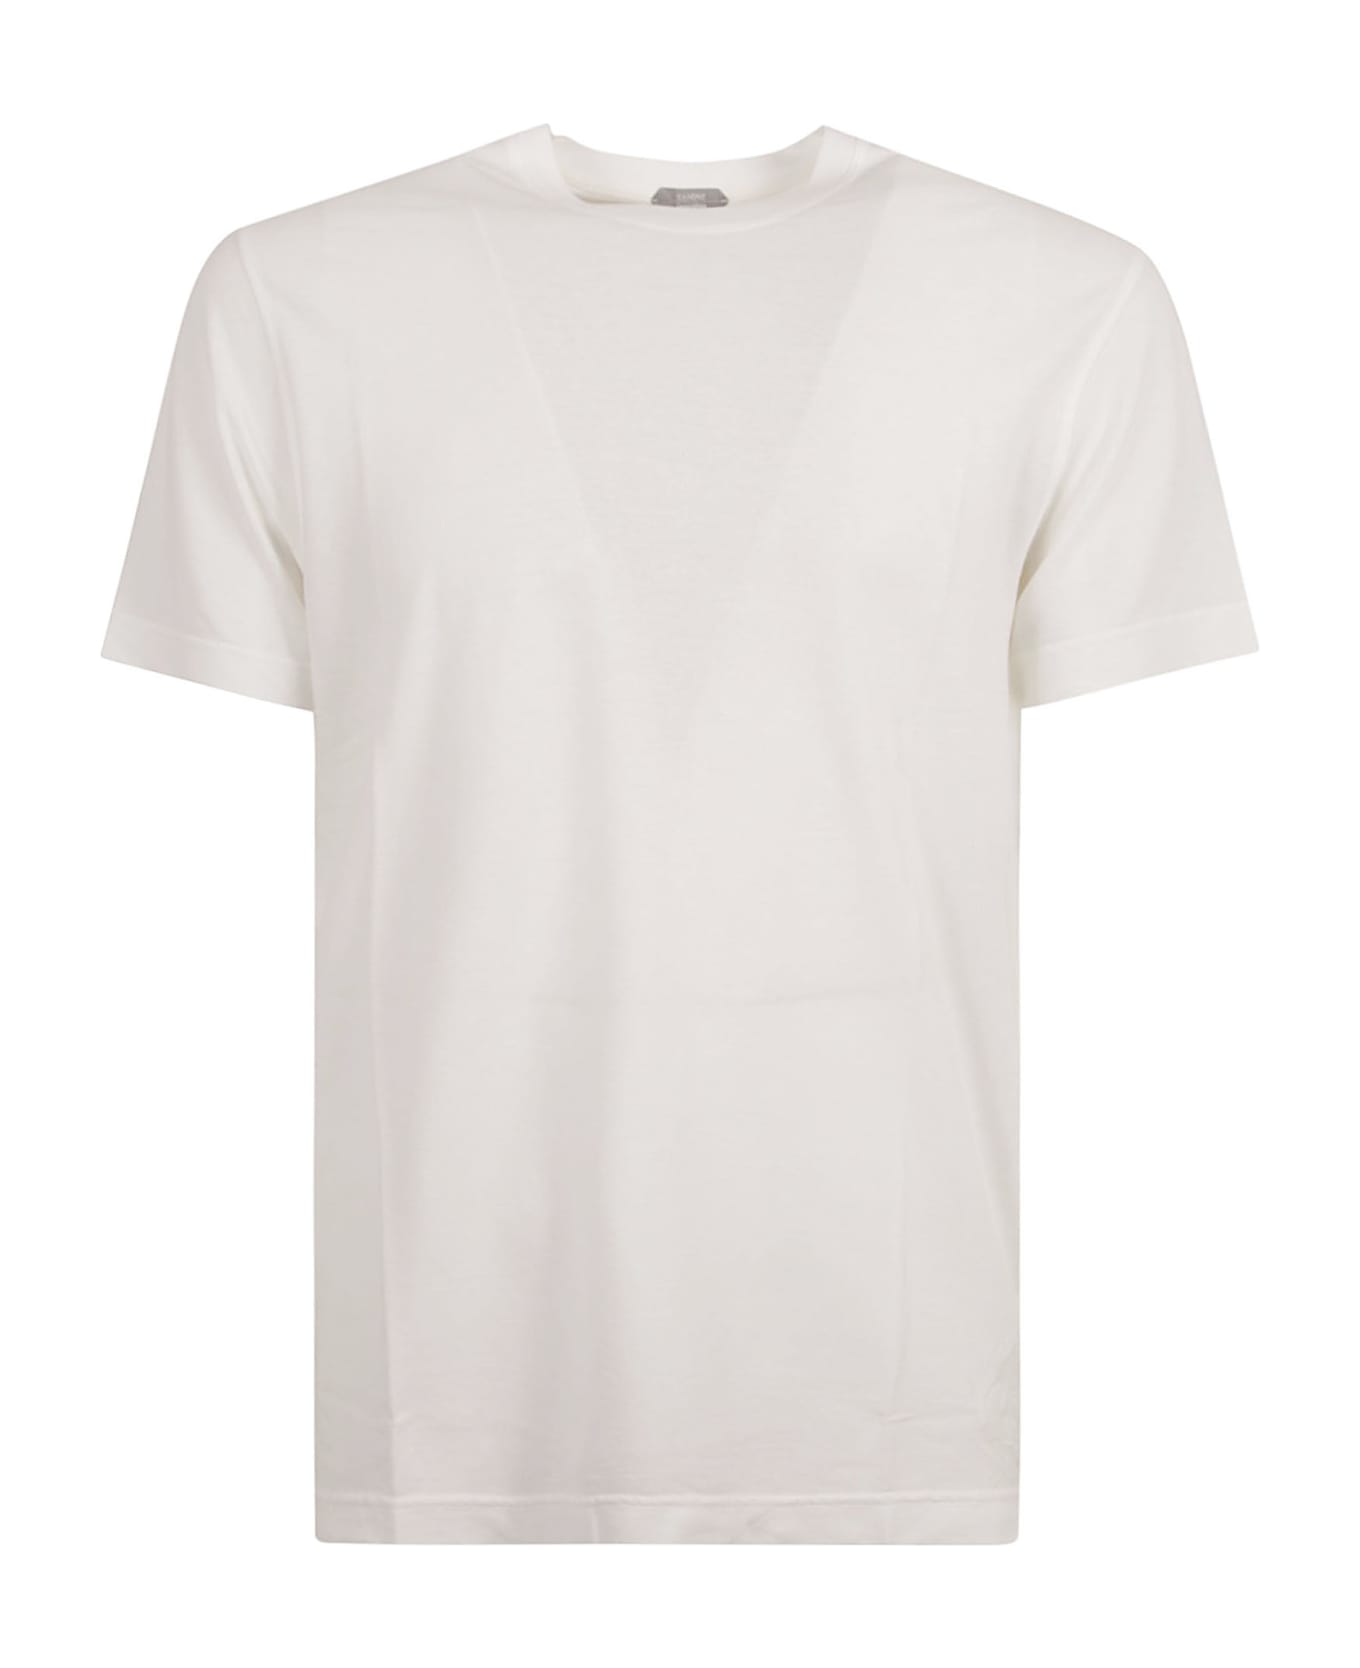 Zanone Round Neck Plain T-shirt - White Ottico シャツ